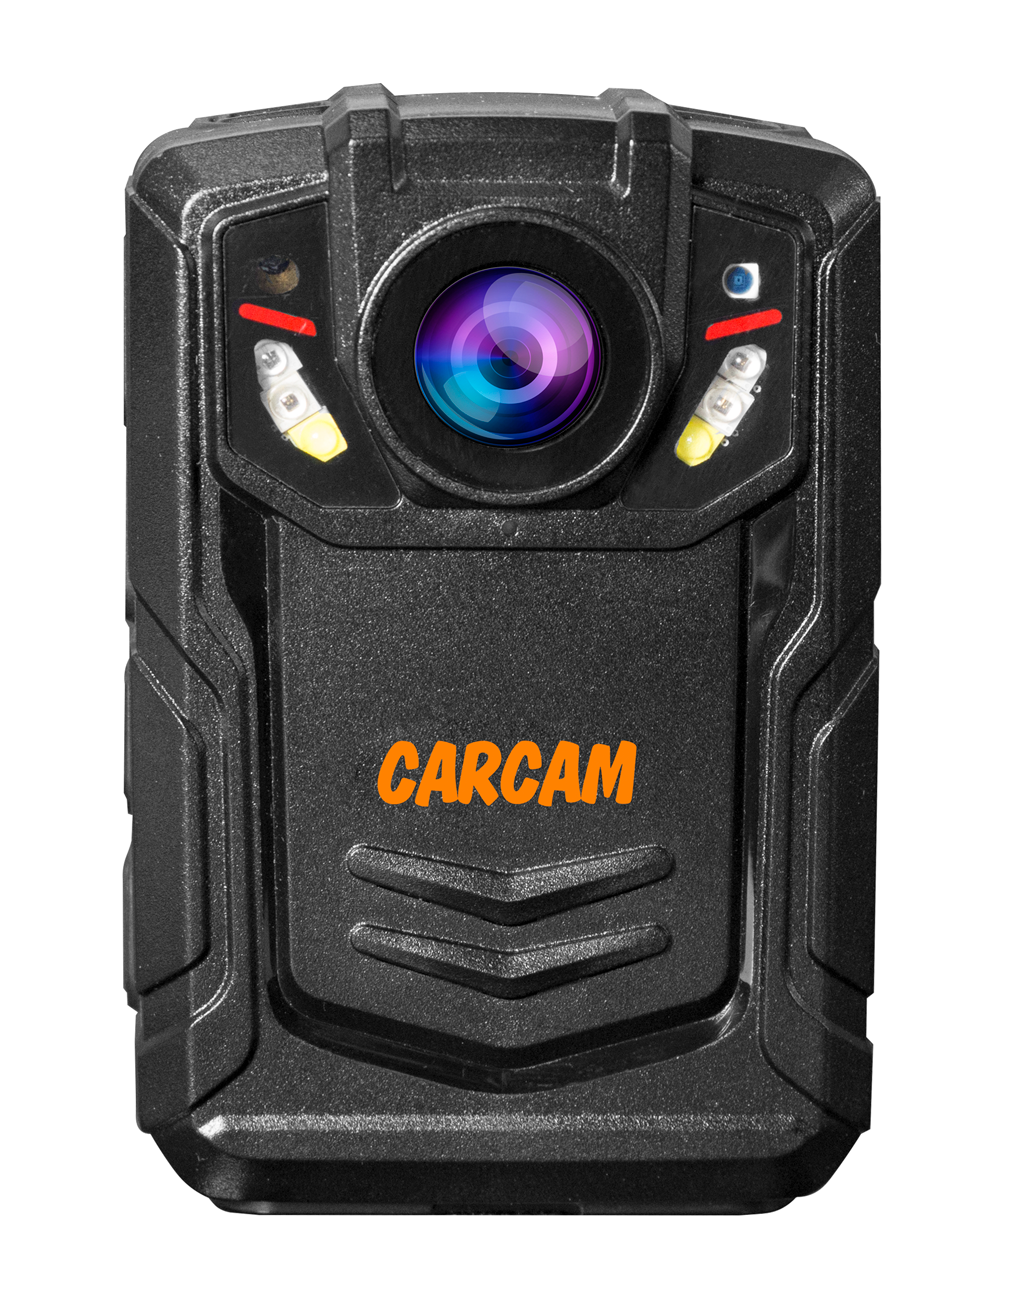 Персональный Quad HD видеорегистратор  CARCAM COMBAT 2S/4G 256Gb персональный видеорегистратор carcam combat 2s pro 256gb